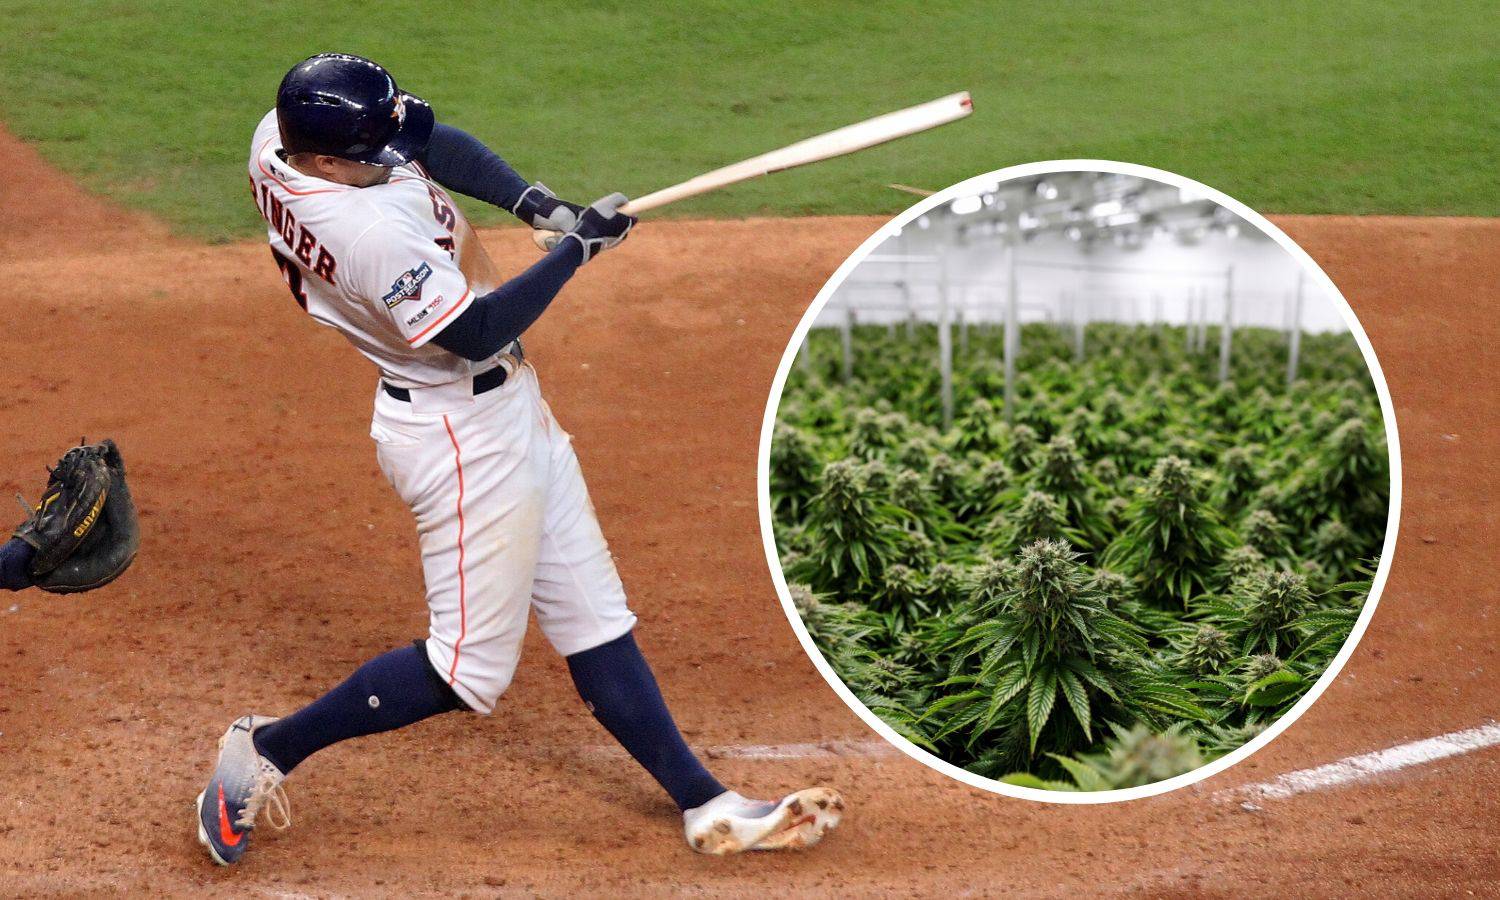 Gospodo, izvolite: Bejzbolaši u SAD-u smiju pušiti marihuanu